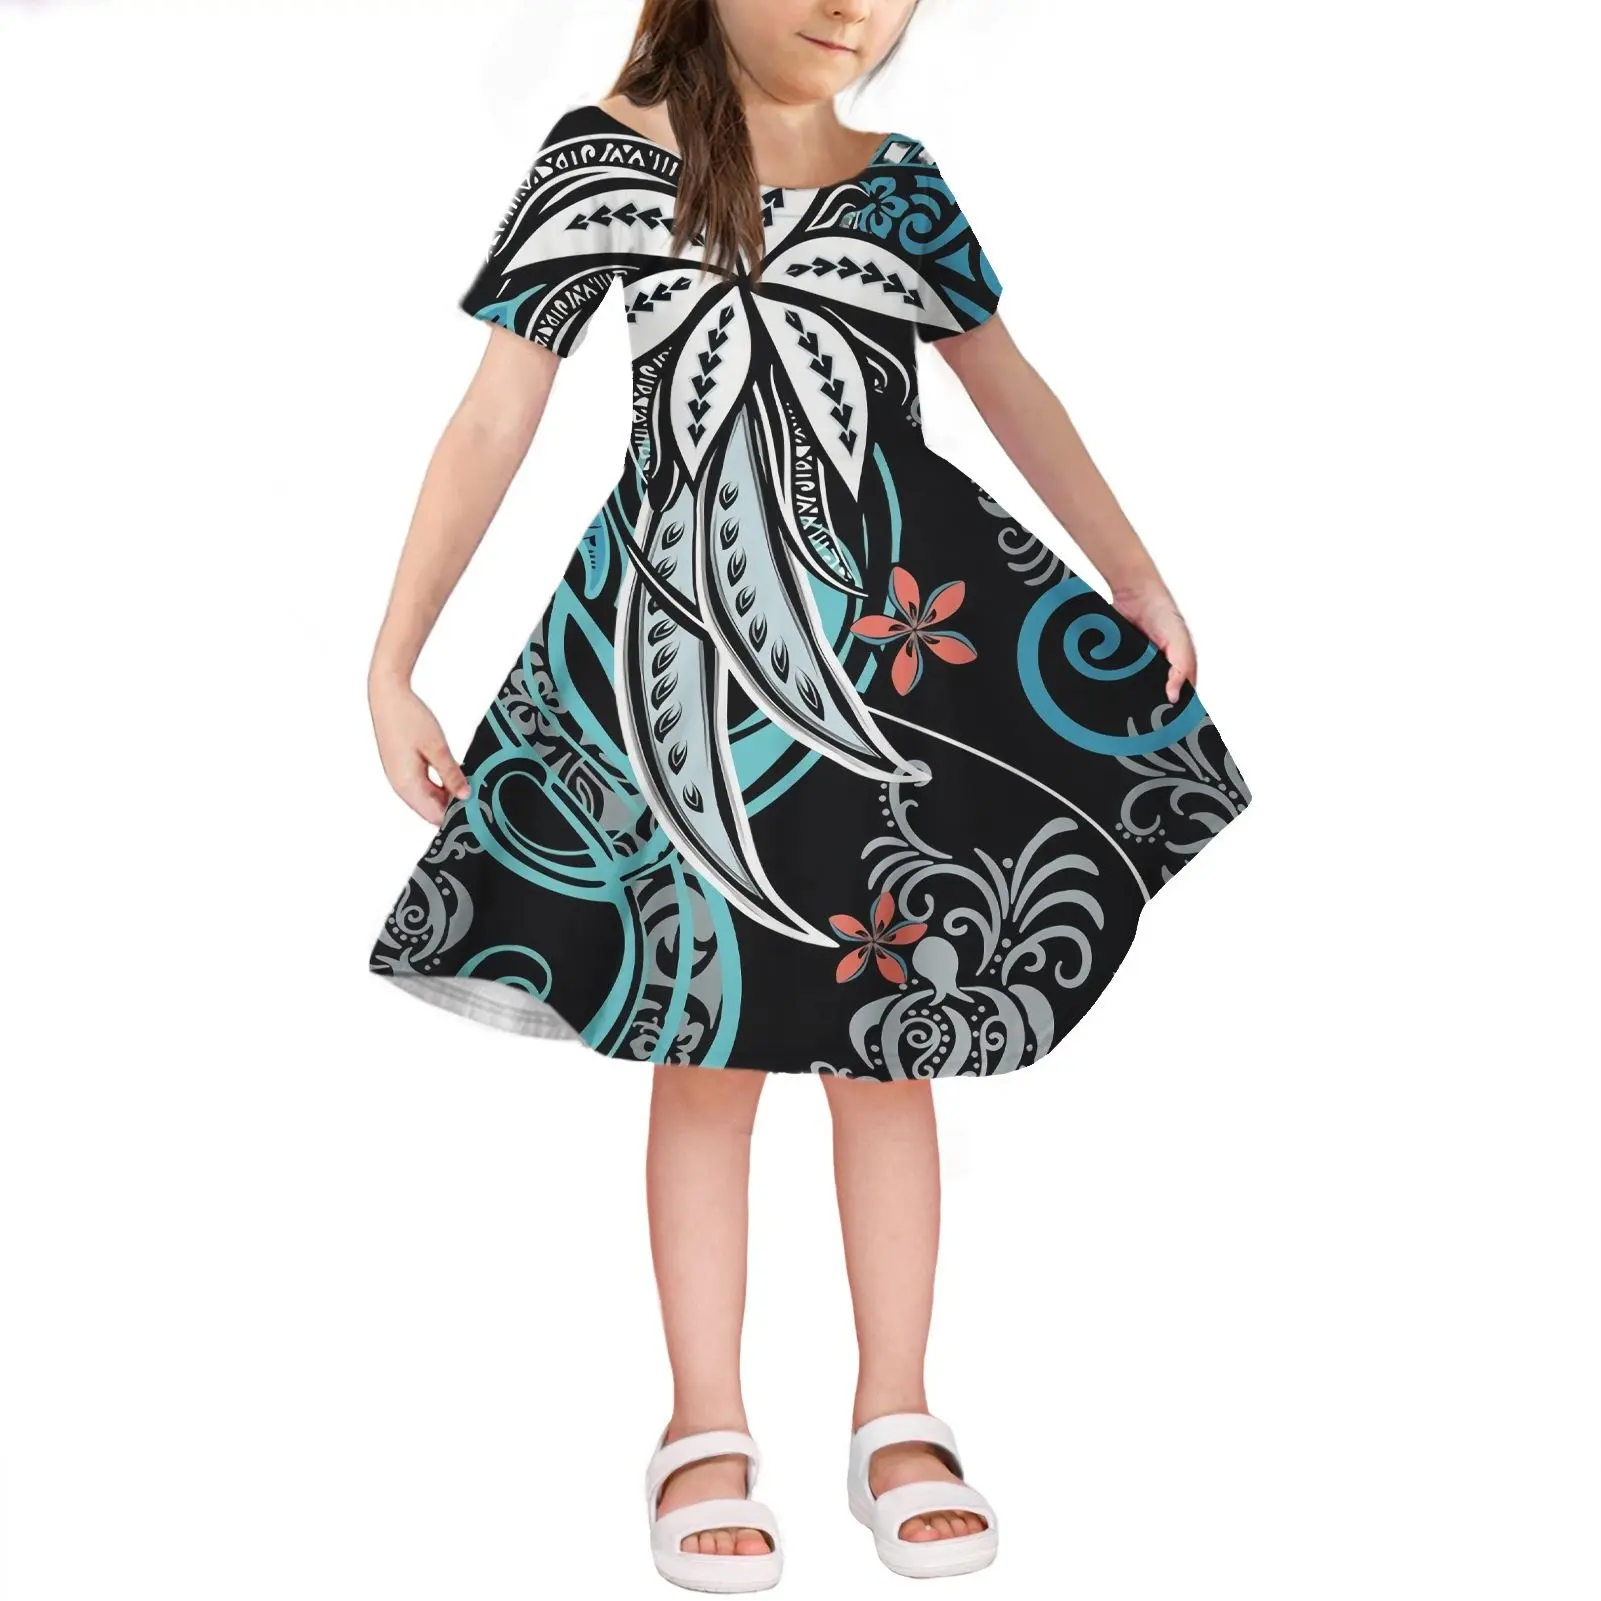 2021 Summer New Fashion Samoan Tribal Dress Girl Short Skirt Dresses Wholesale Children Girl Kids Clothing